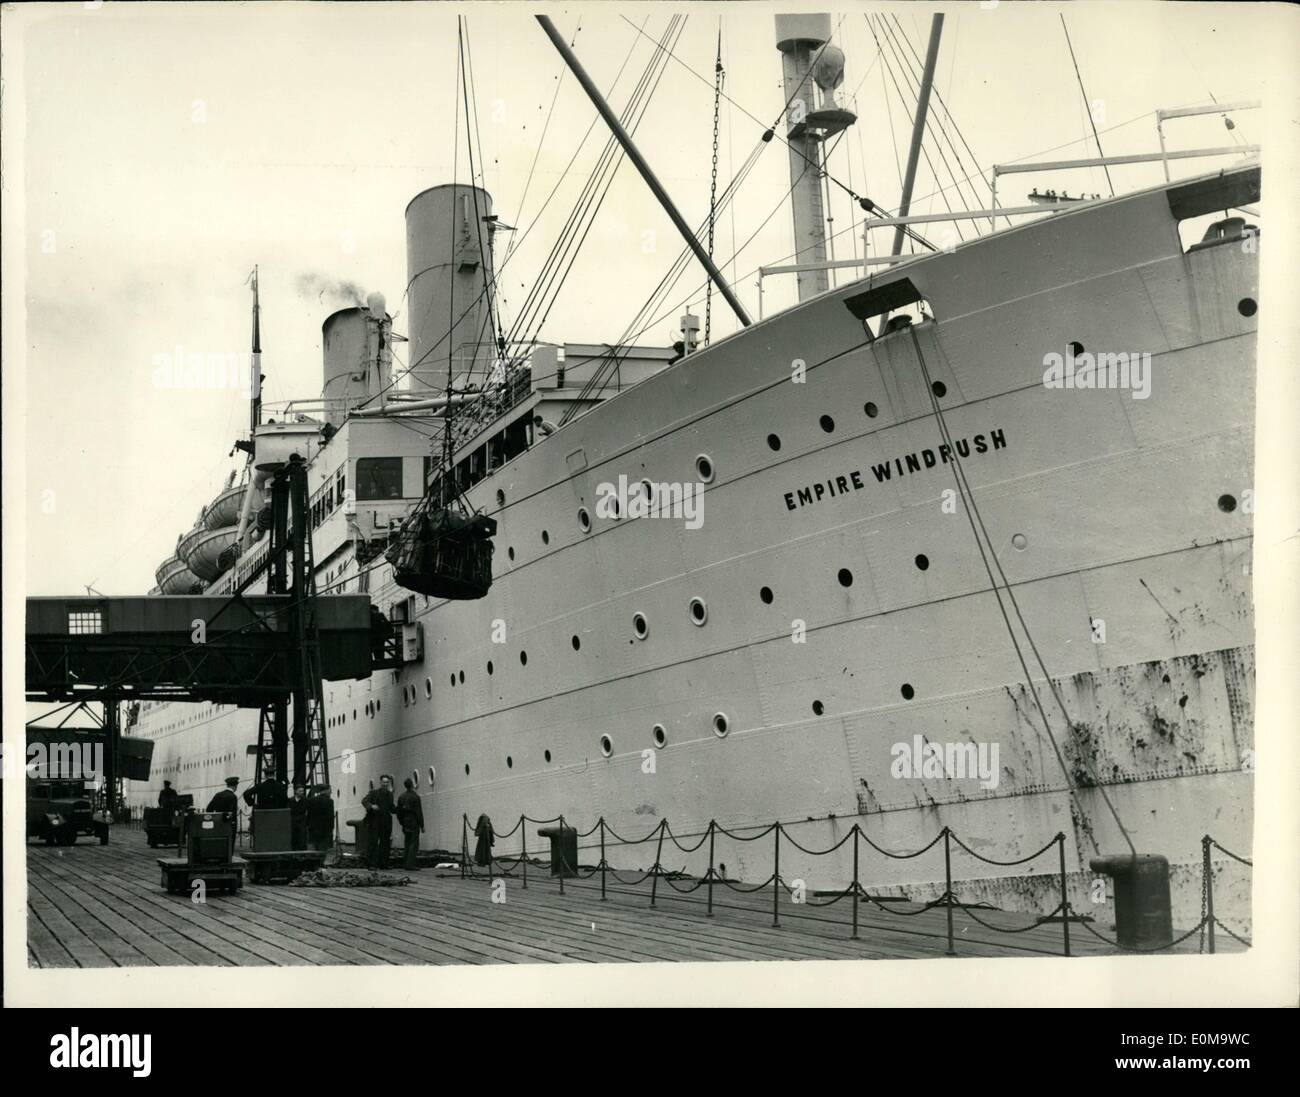 3. März 1954 - berichteten britische Schiff verbrannte sich im Mittelmeer. Keystone-Foto zeigt: Blick auf das britische Schiff Empire Windrush berichtet im Mittelmeer ausgebrannt. Alle Mann an Bord, den nächstgelegenen Hafen Algier etwa dreißig Meilen entfernt wurden. Stockfoto